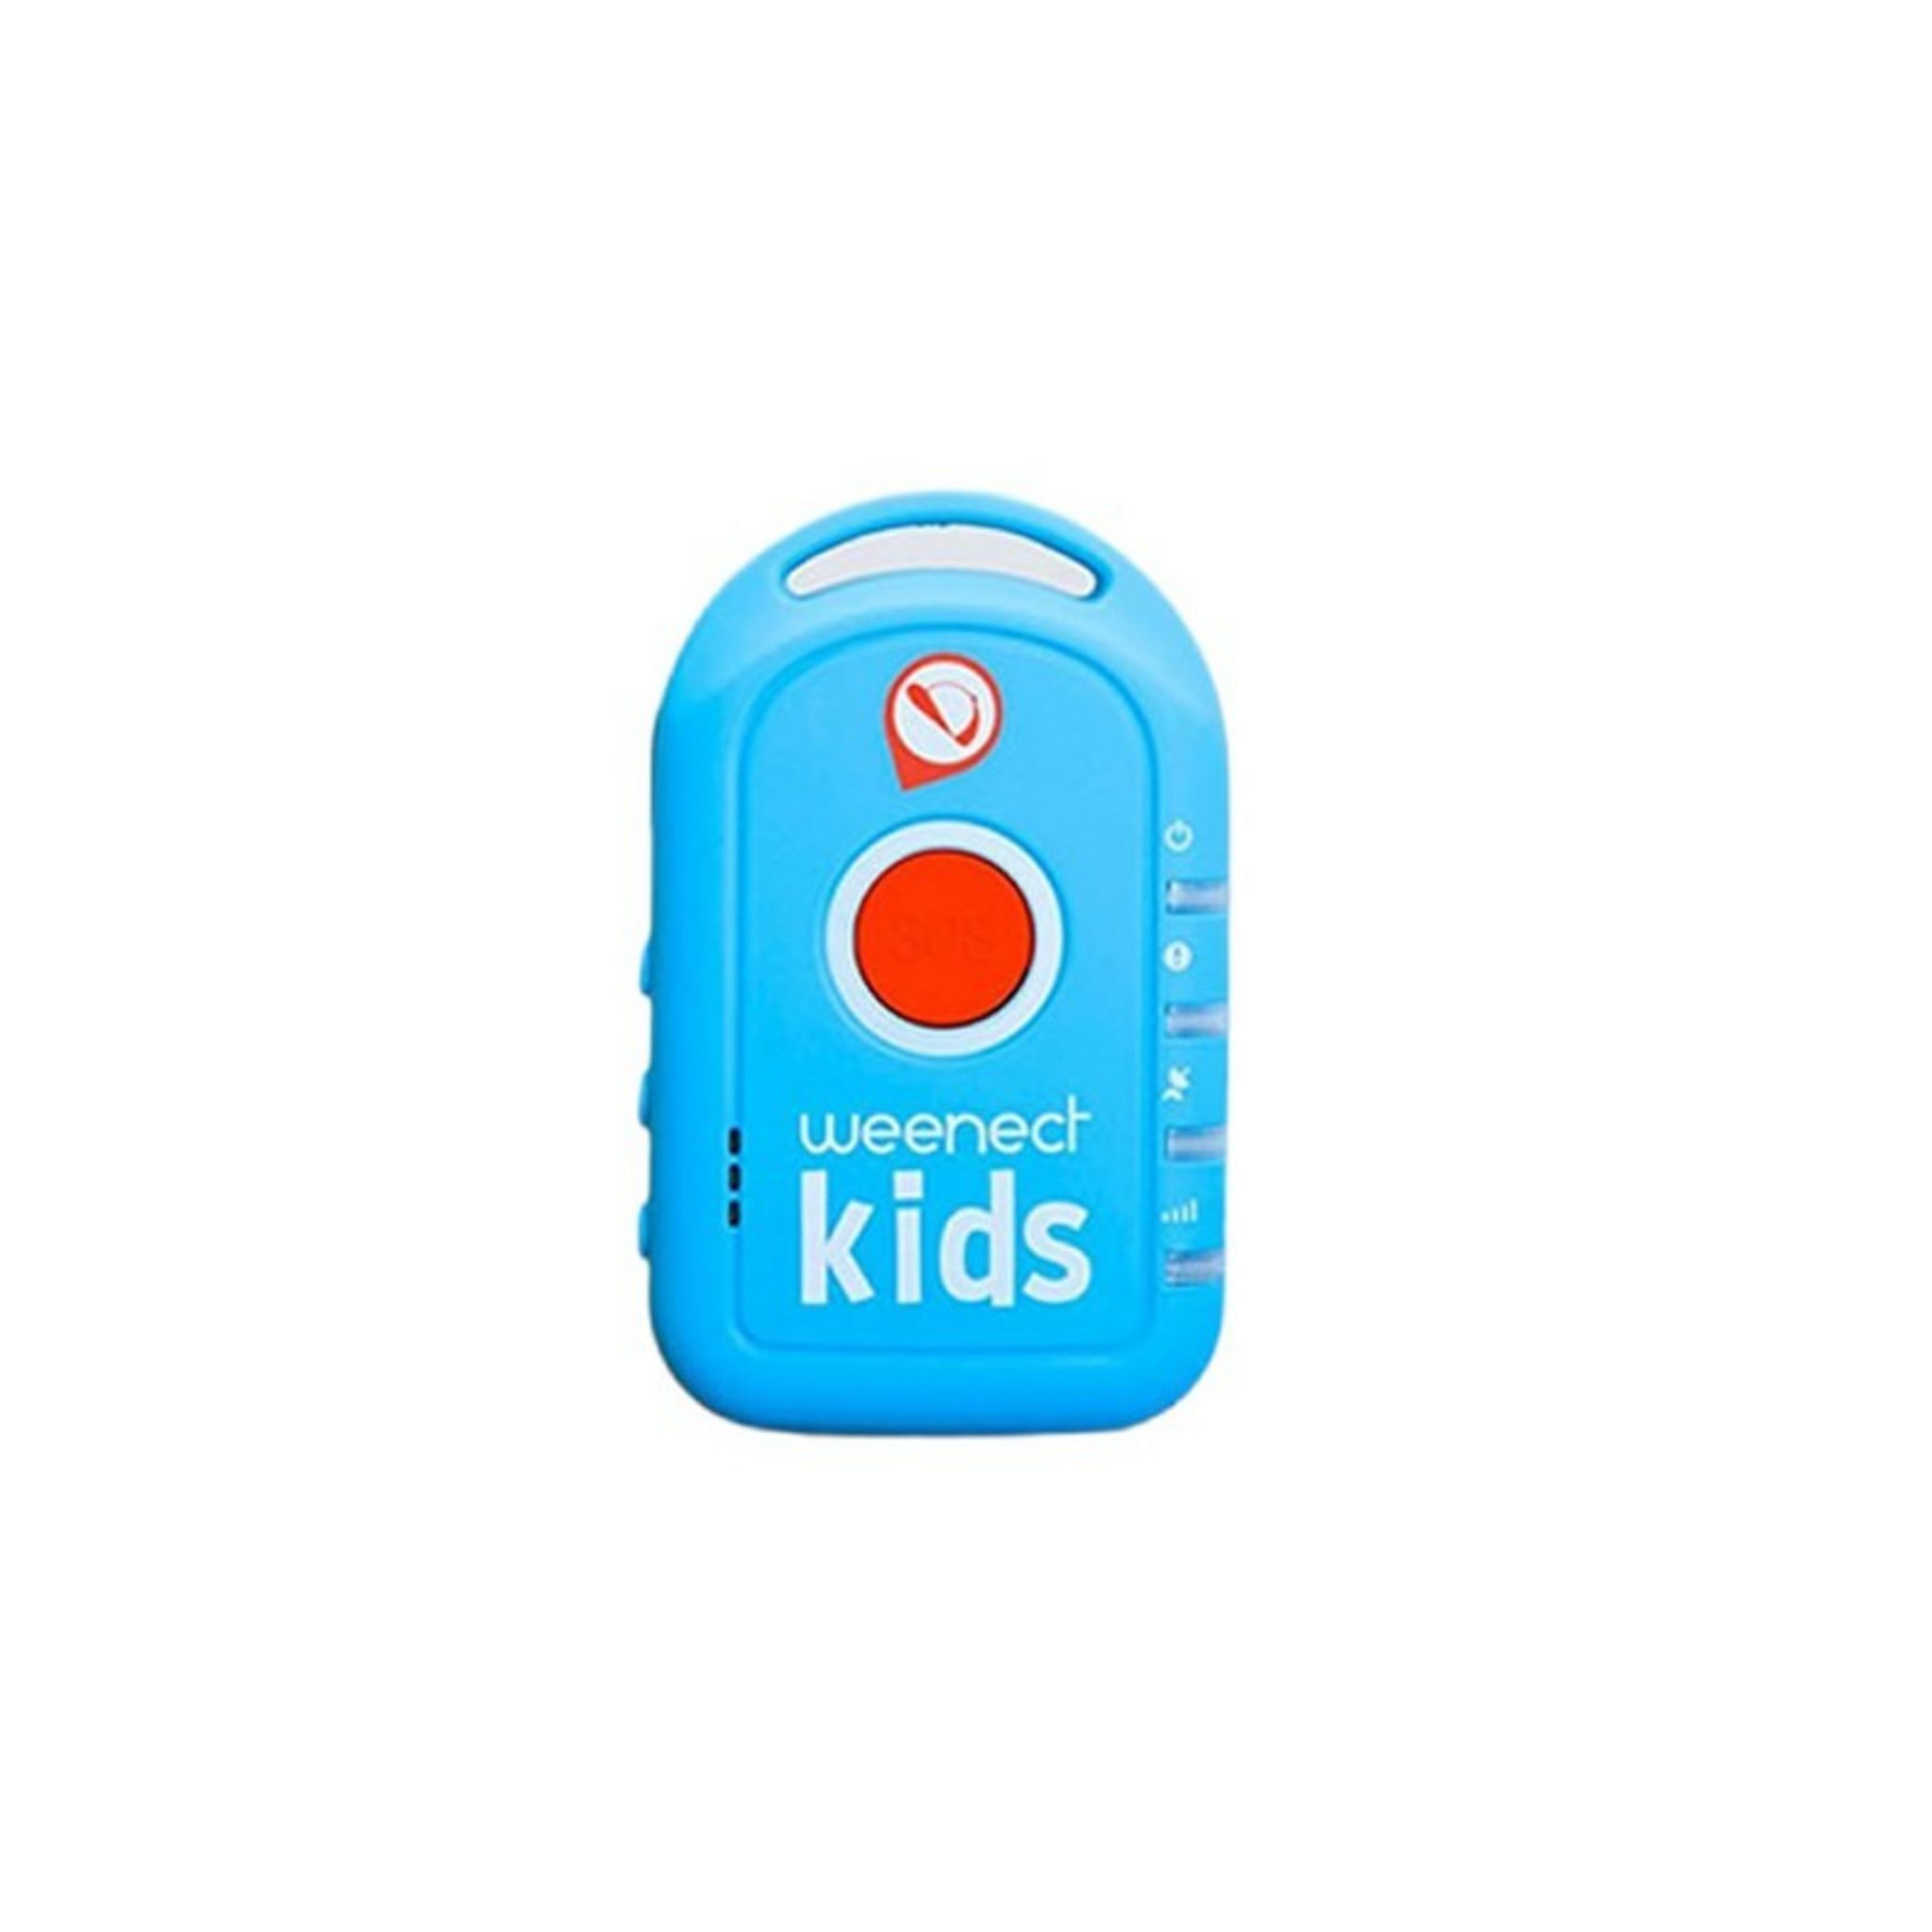 Weenect Kids - GPS Enfant, sans Limite de Distance, 7 Jours d'autonomie, Bouton d'Alerte, Téléphone d'urgence, 2G